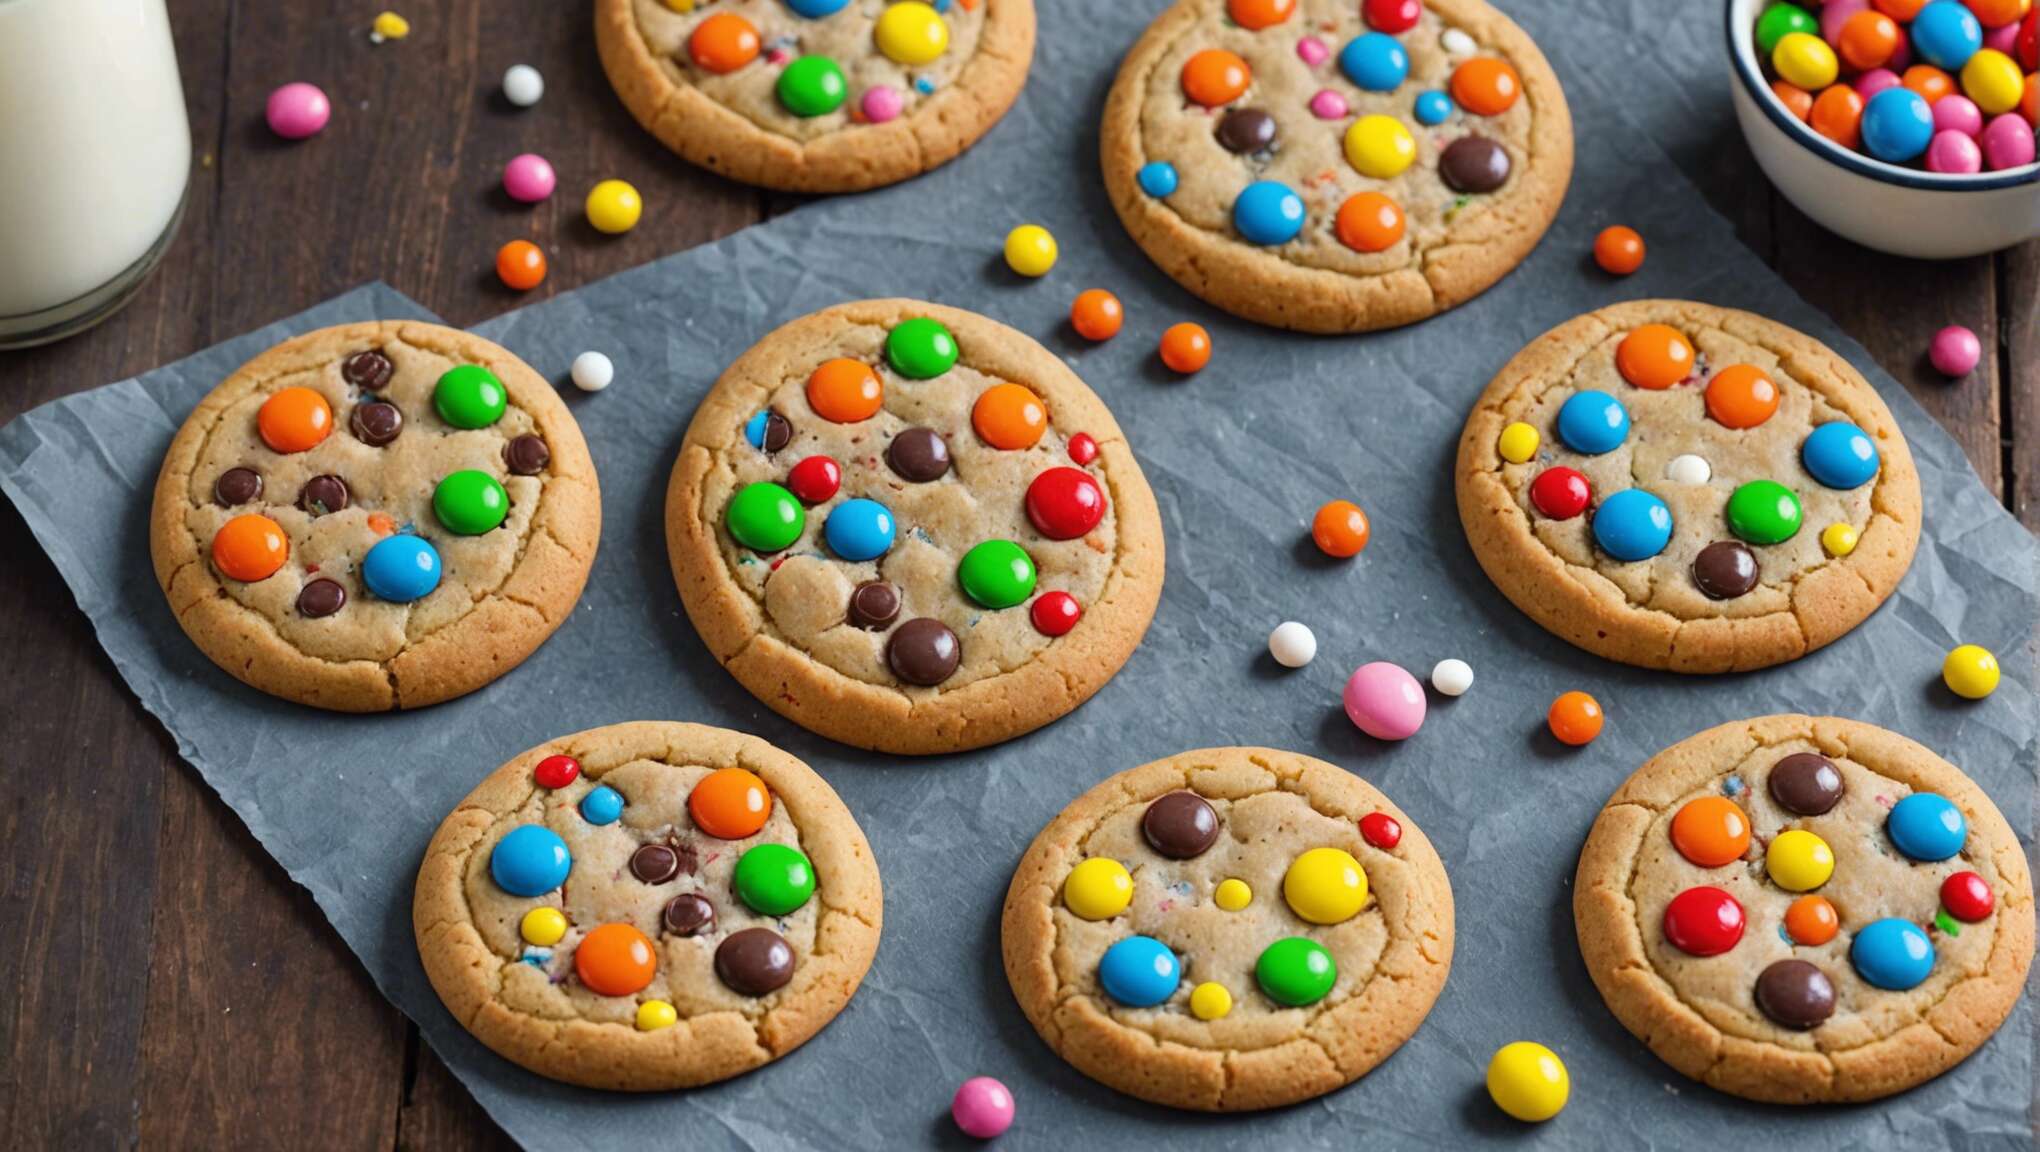 Délices enfantins : réaliser des cookies aux smarties ludiques